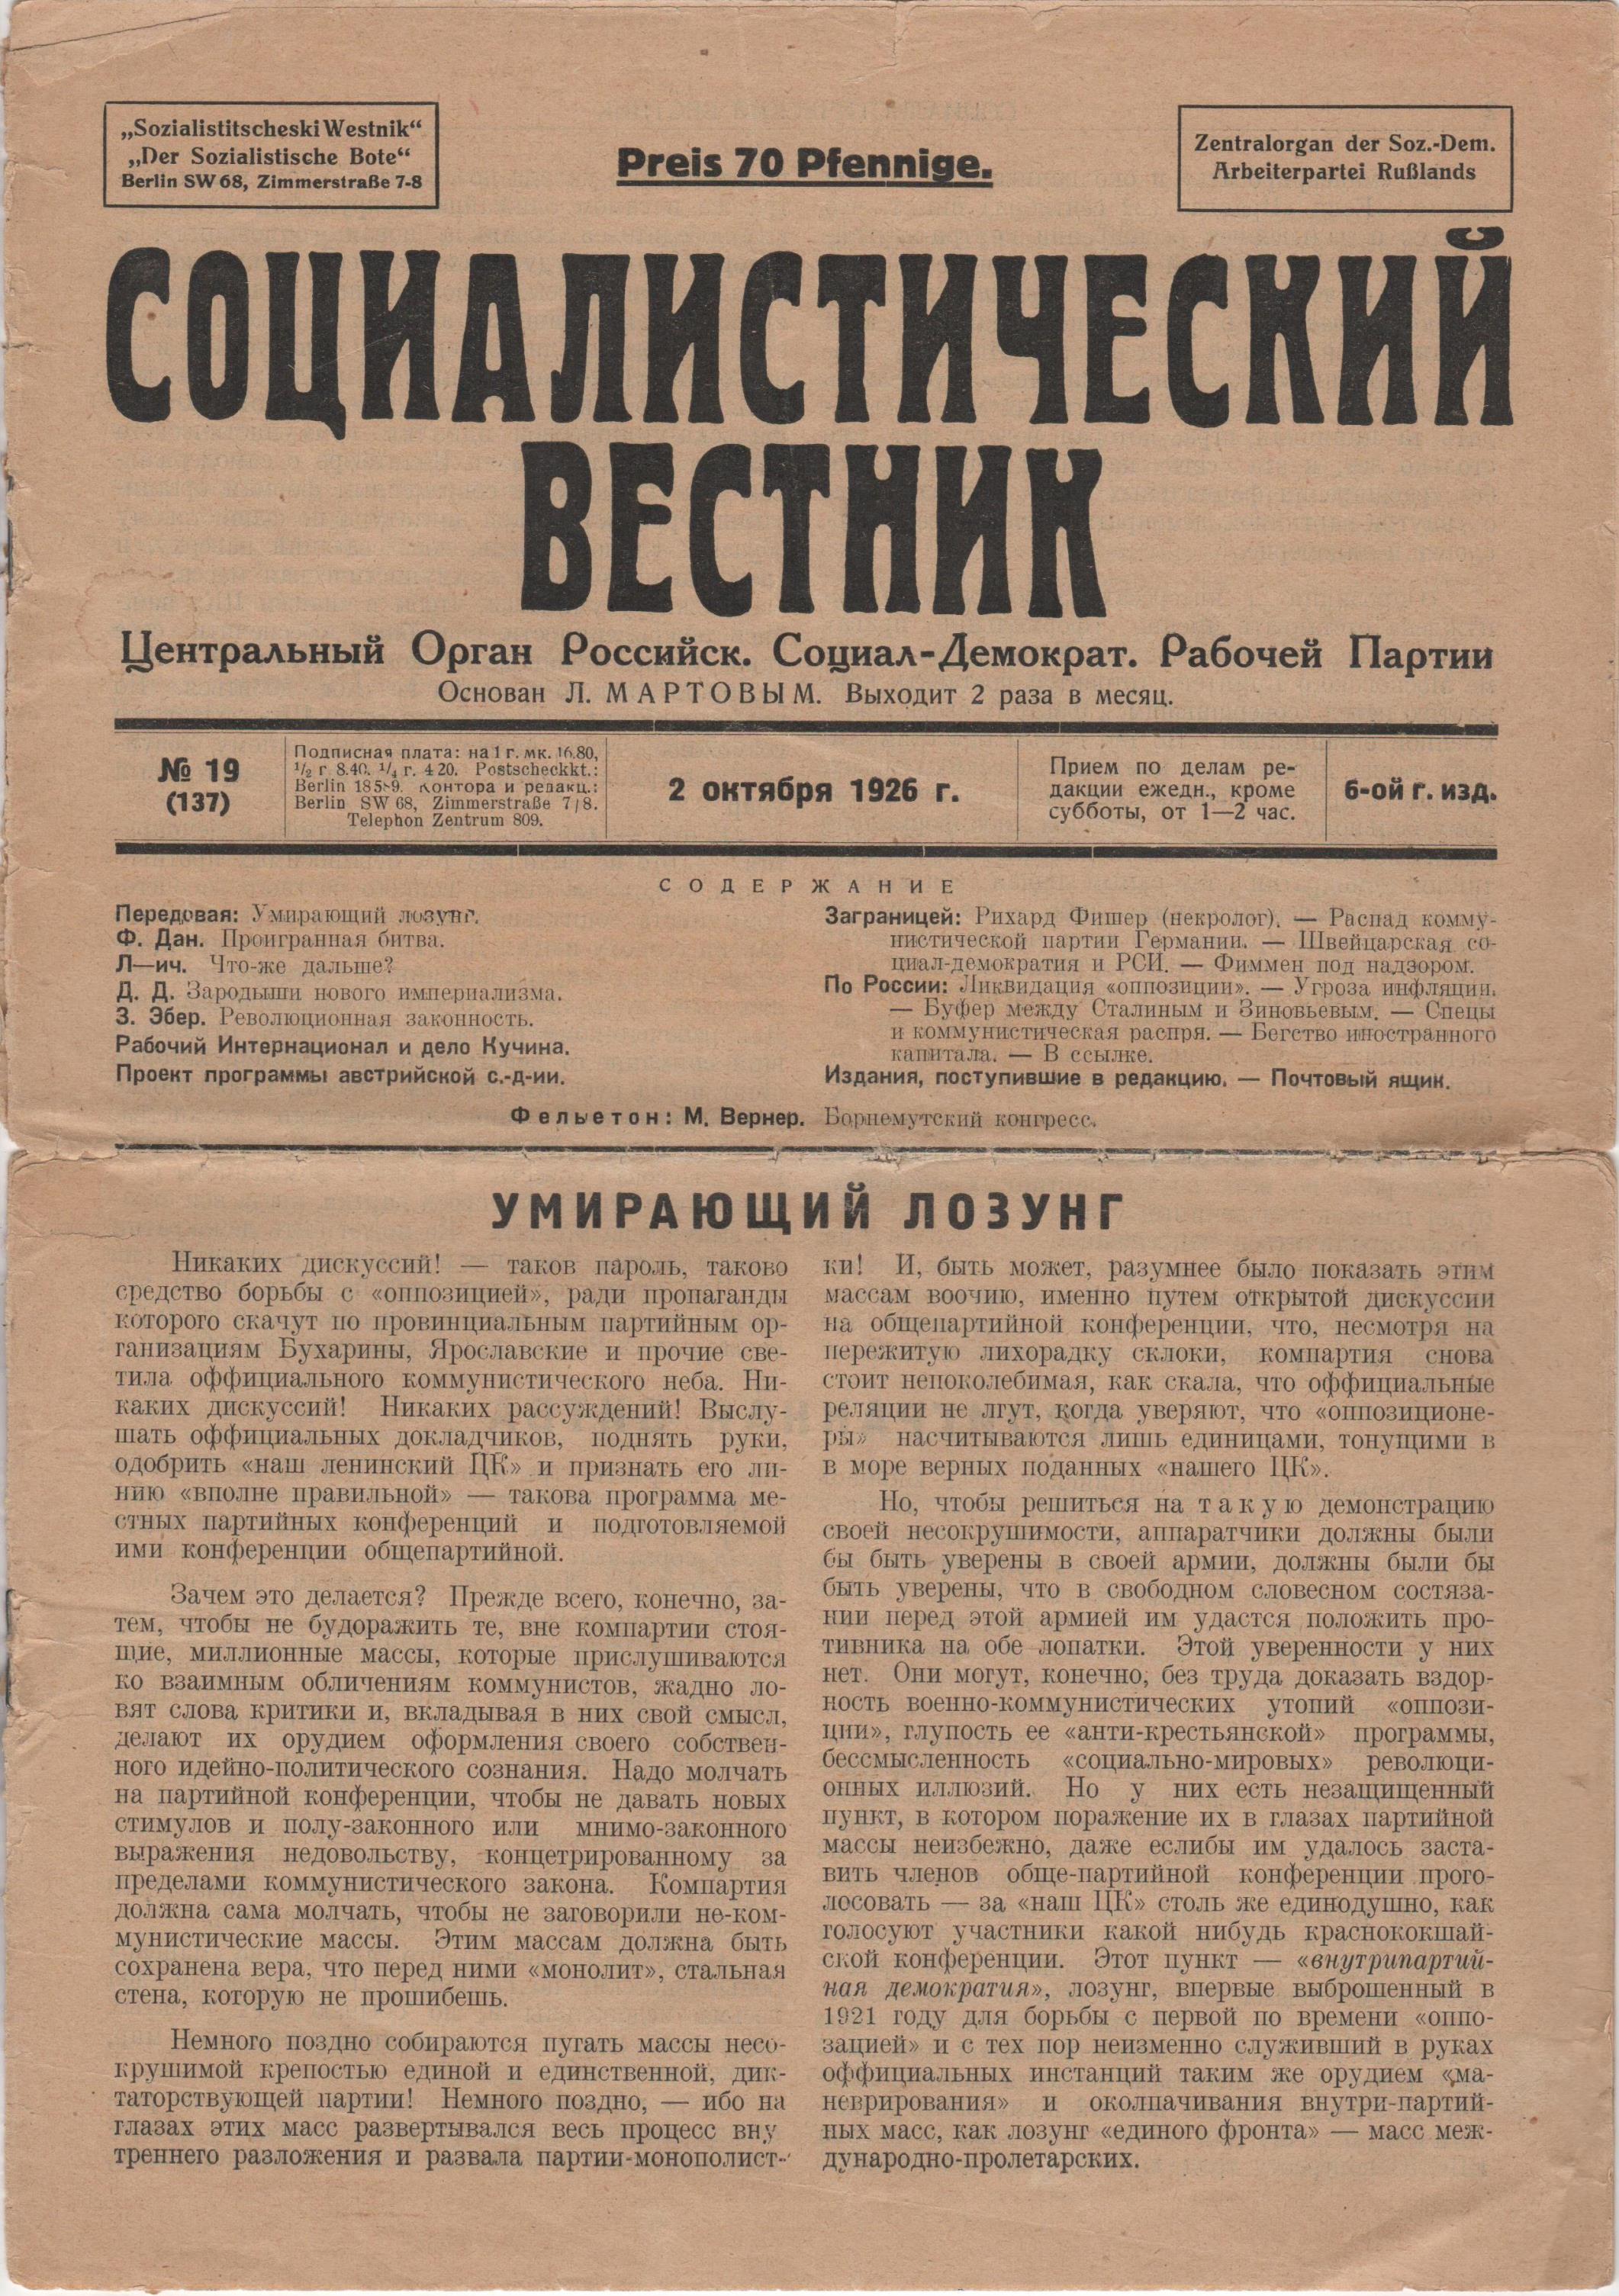 Журнал "Социалистический вестник". 1926. № 19 (жовтень)